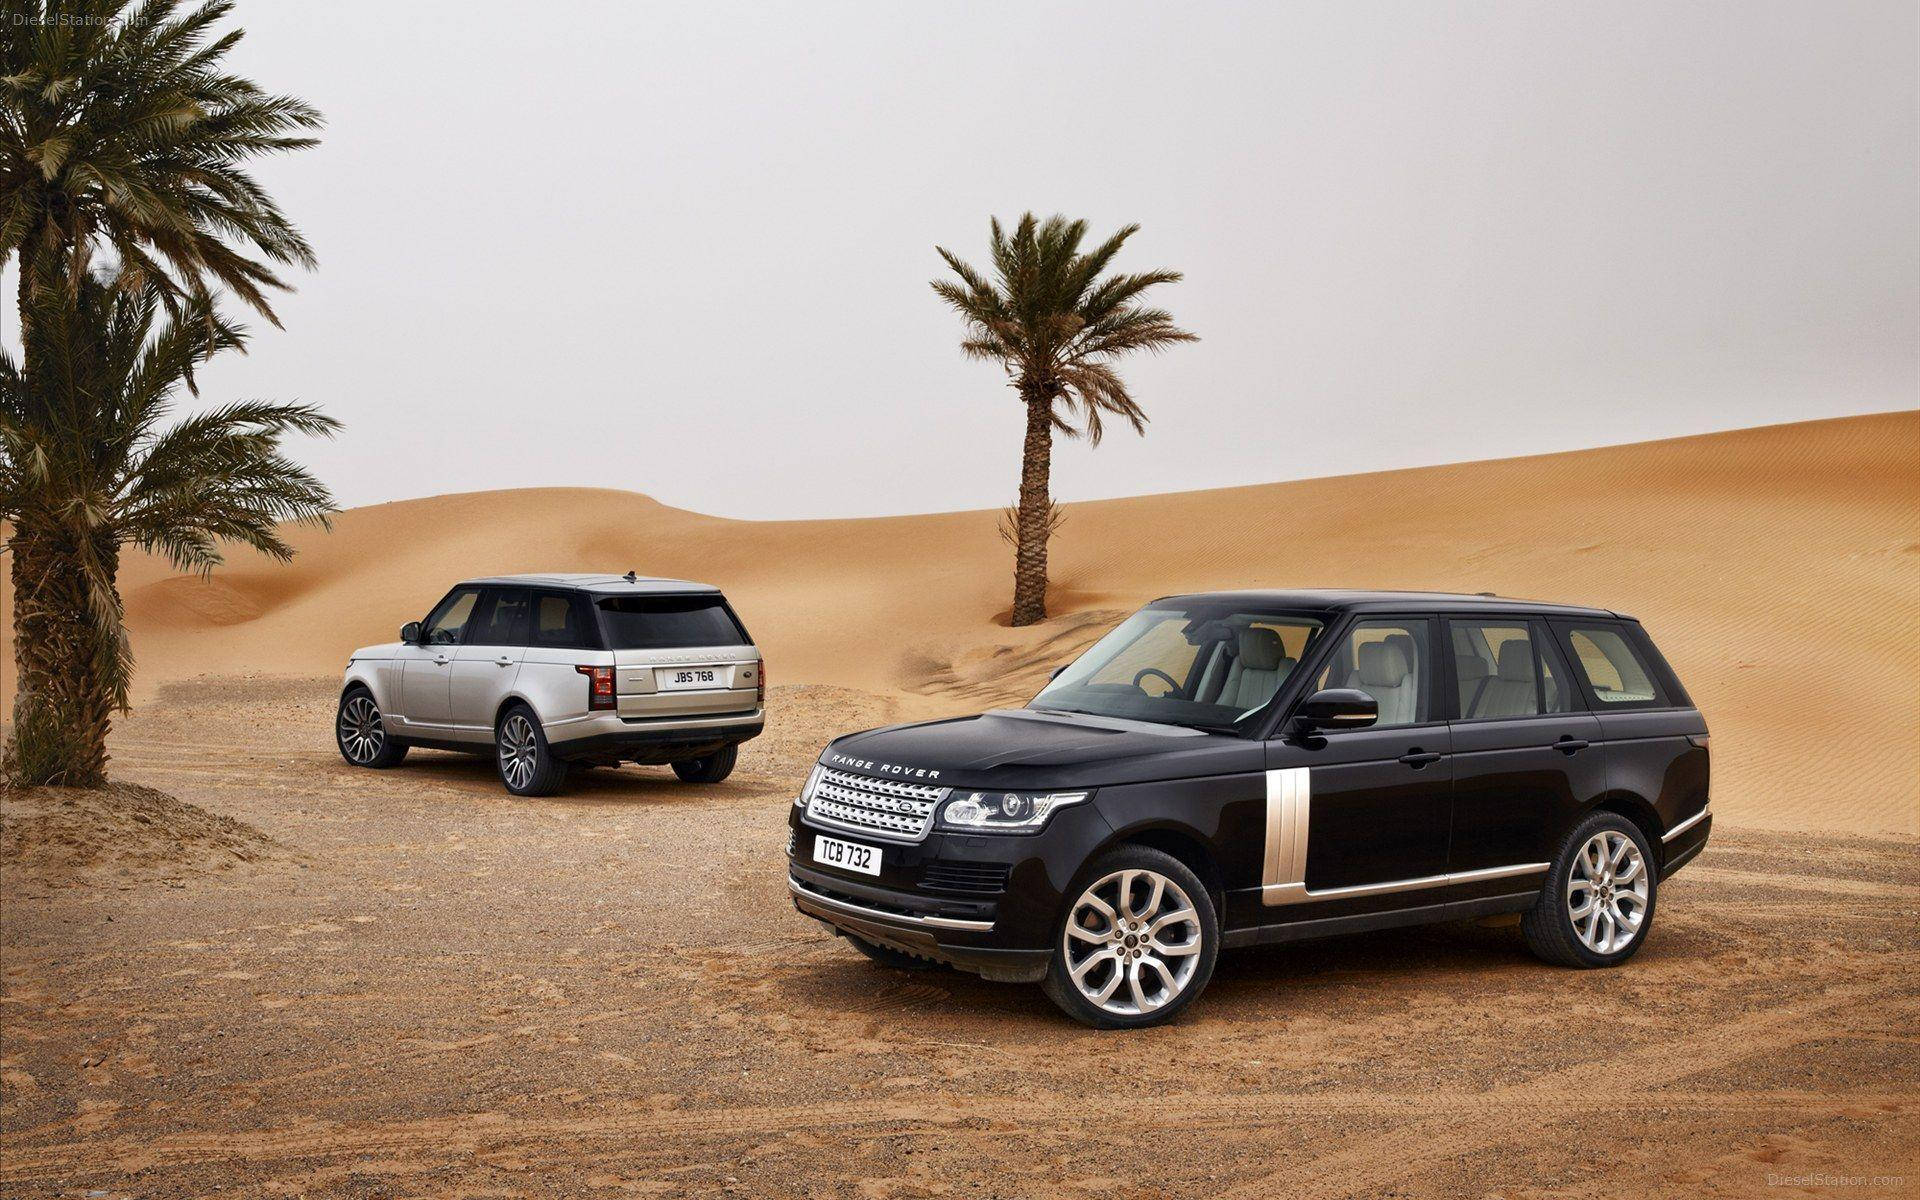 4k Range Rover Desert Wallpaper